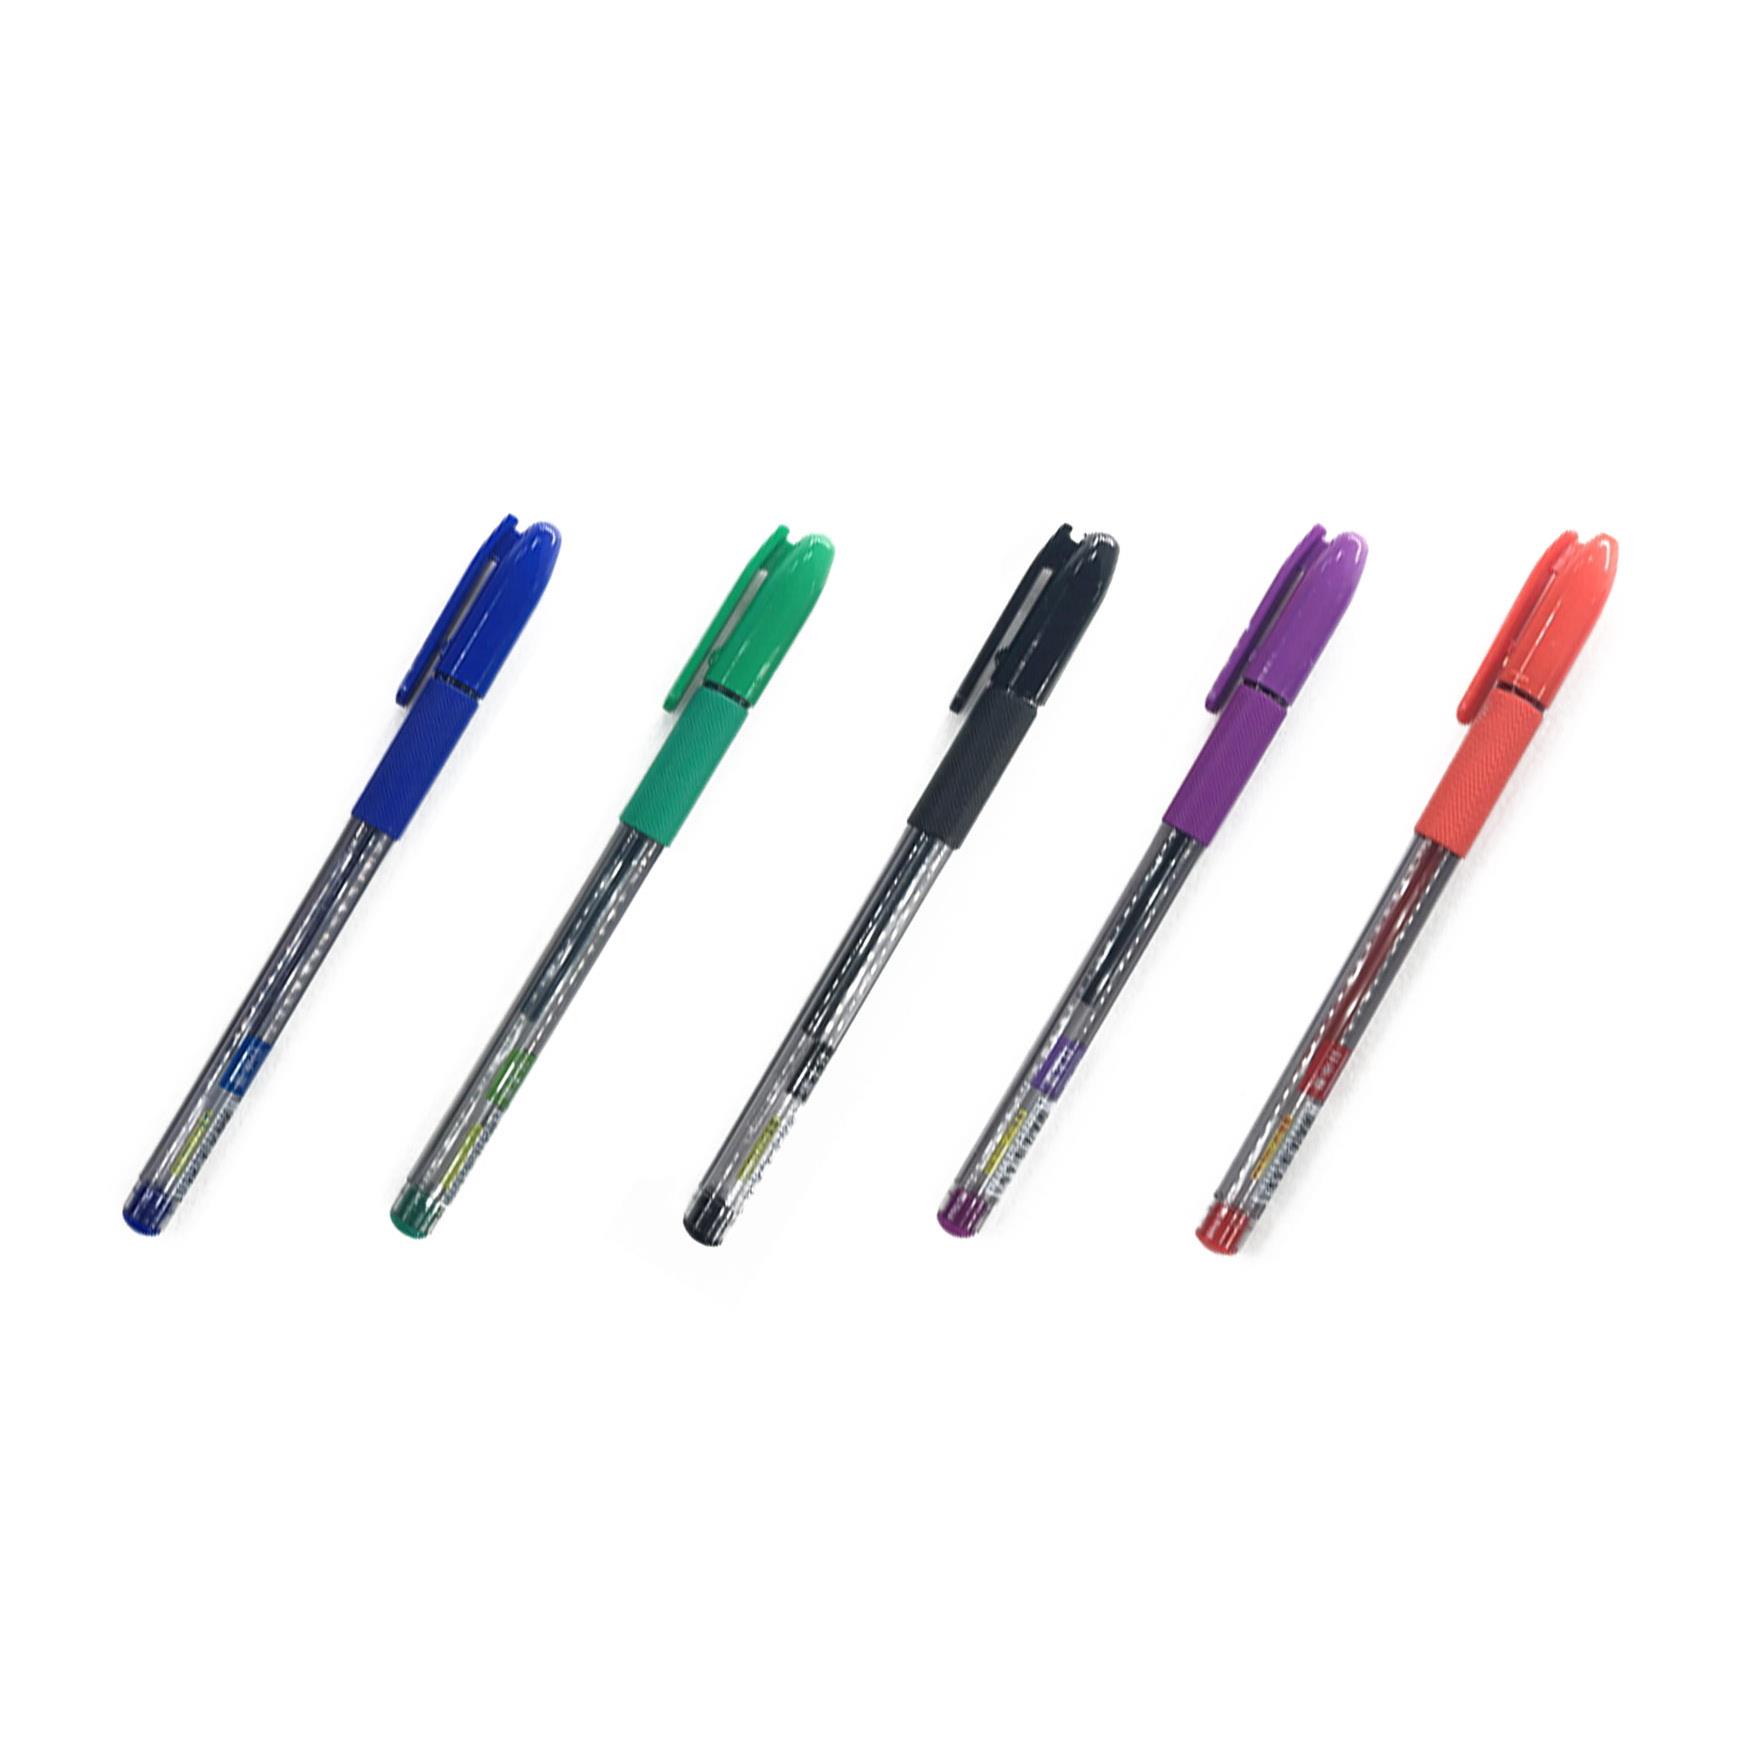 聖得GP-1002-NEW黑鑽中性筆 -(藍/黑/綠/紫/紅)